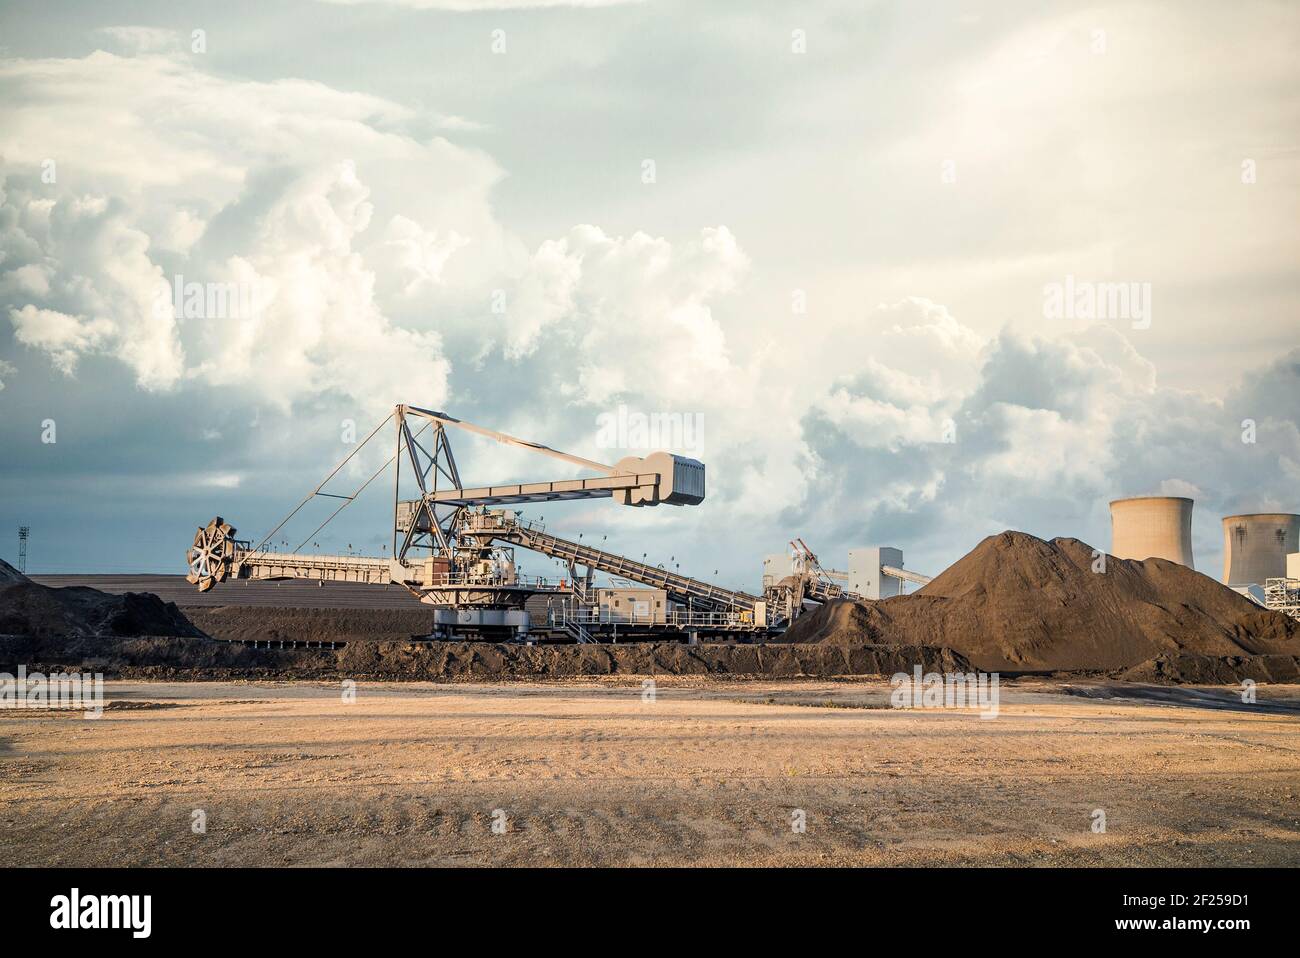 Schaufelradmaschine großen Surface Mining Bagger bei UK Power Station, die in offenen Gusenhaufen und Kohlenstapeln arbeitet Im Koalfeld dramatischen Wolkenhimmel Stockfoto